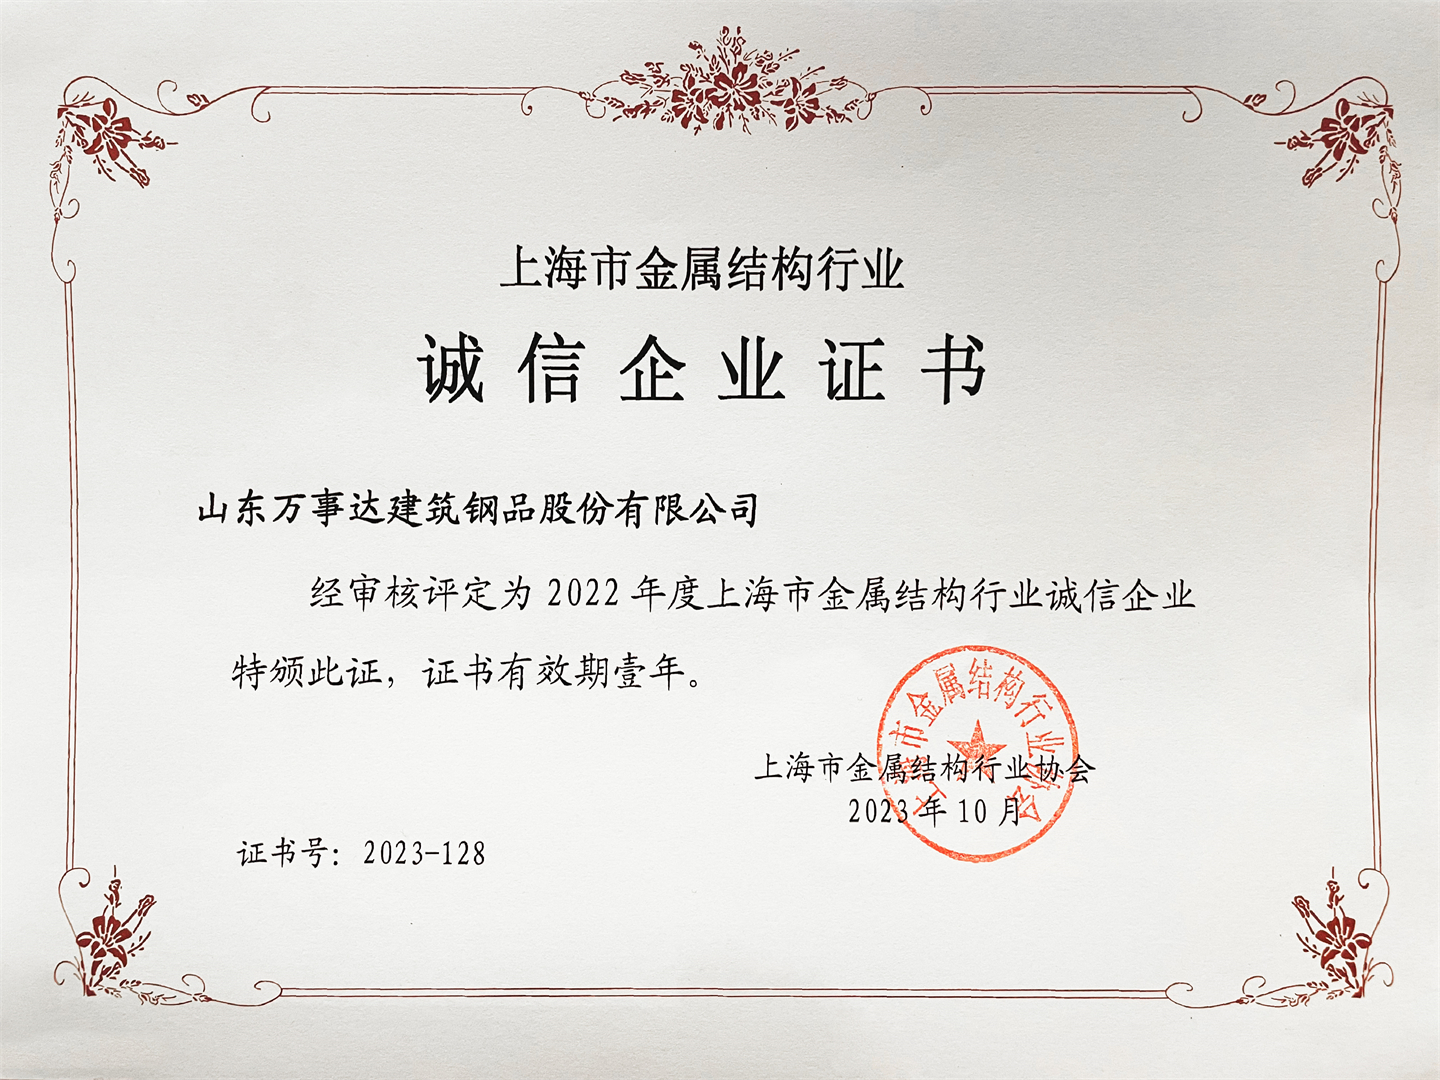 Buenas noticias: wiskind ganó el 2022 Shanghai Metal estructura industria empresa integridad(图3)